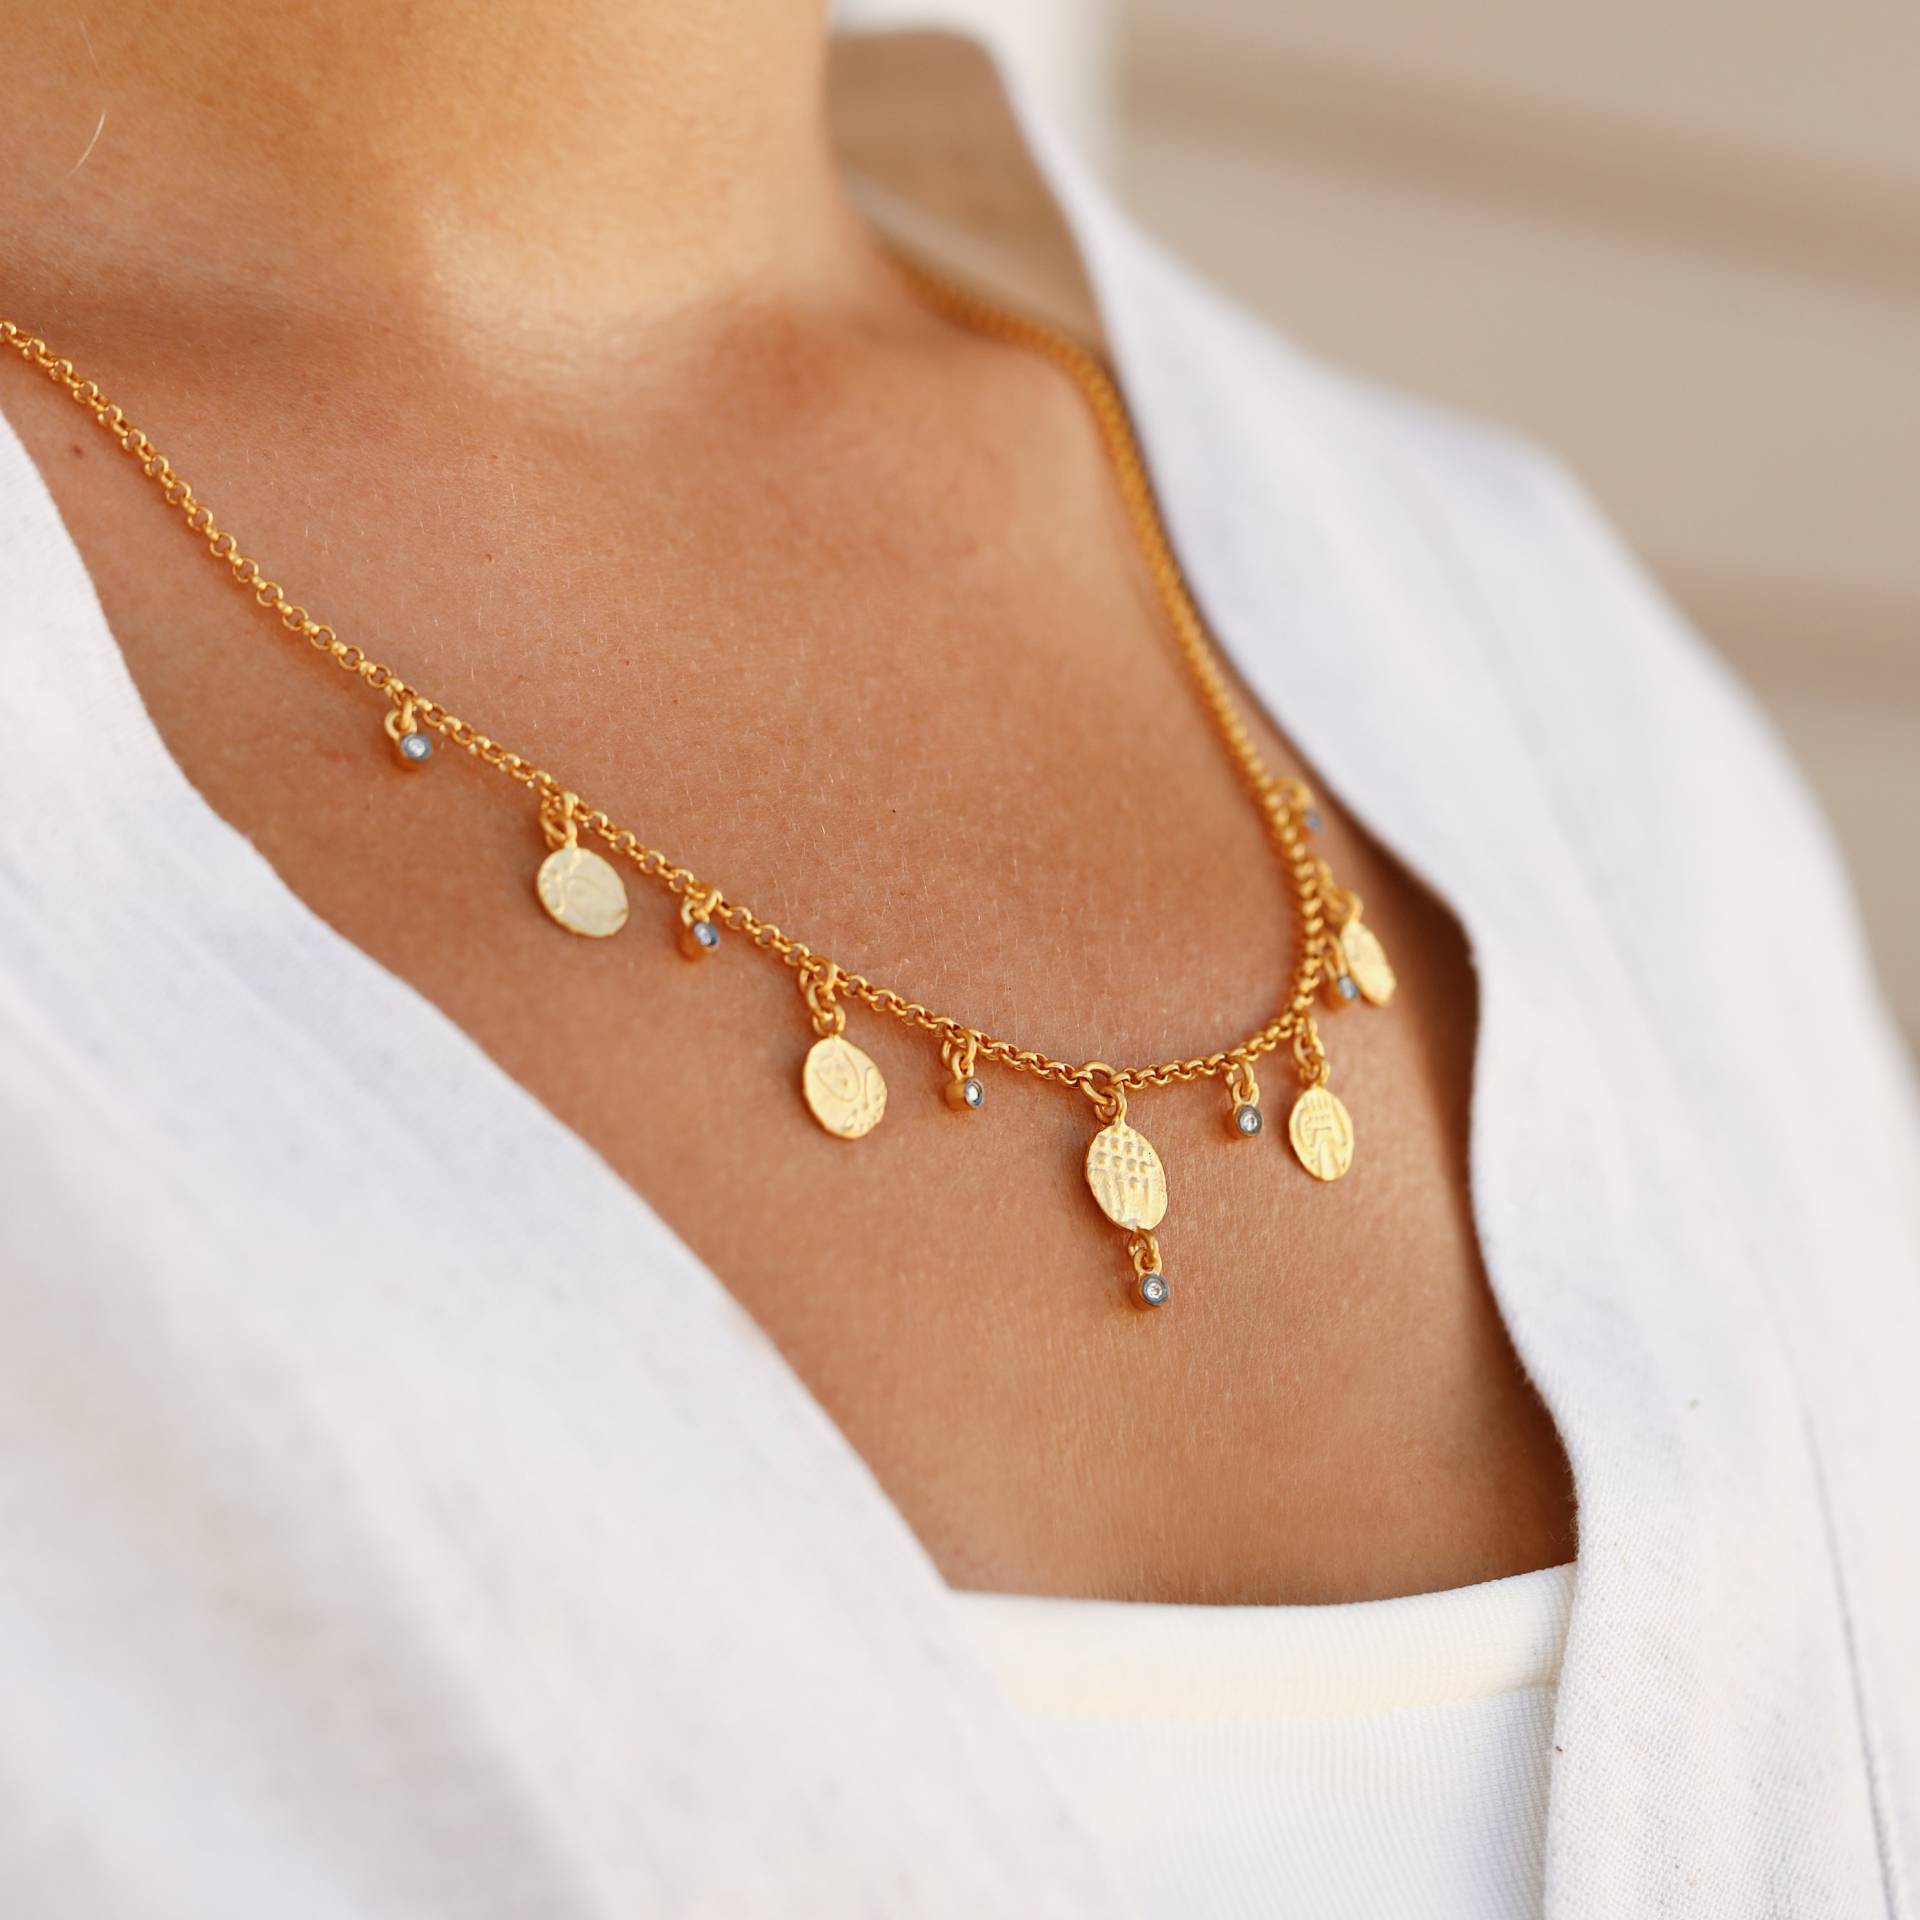 Blaundos Halskette, 24K Gelbgold Über Silber Halskette Mit Diamanten, Antike Geschenk Für Sie von Maresuijewelry